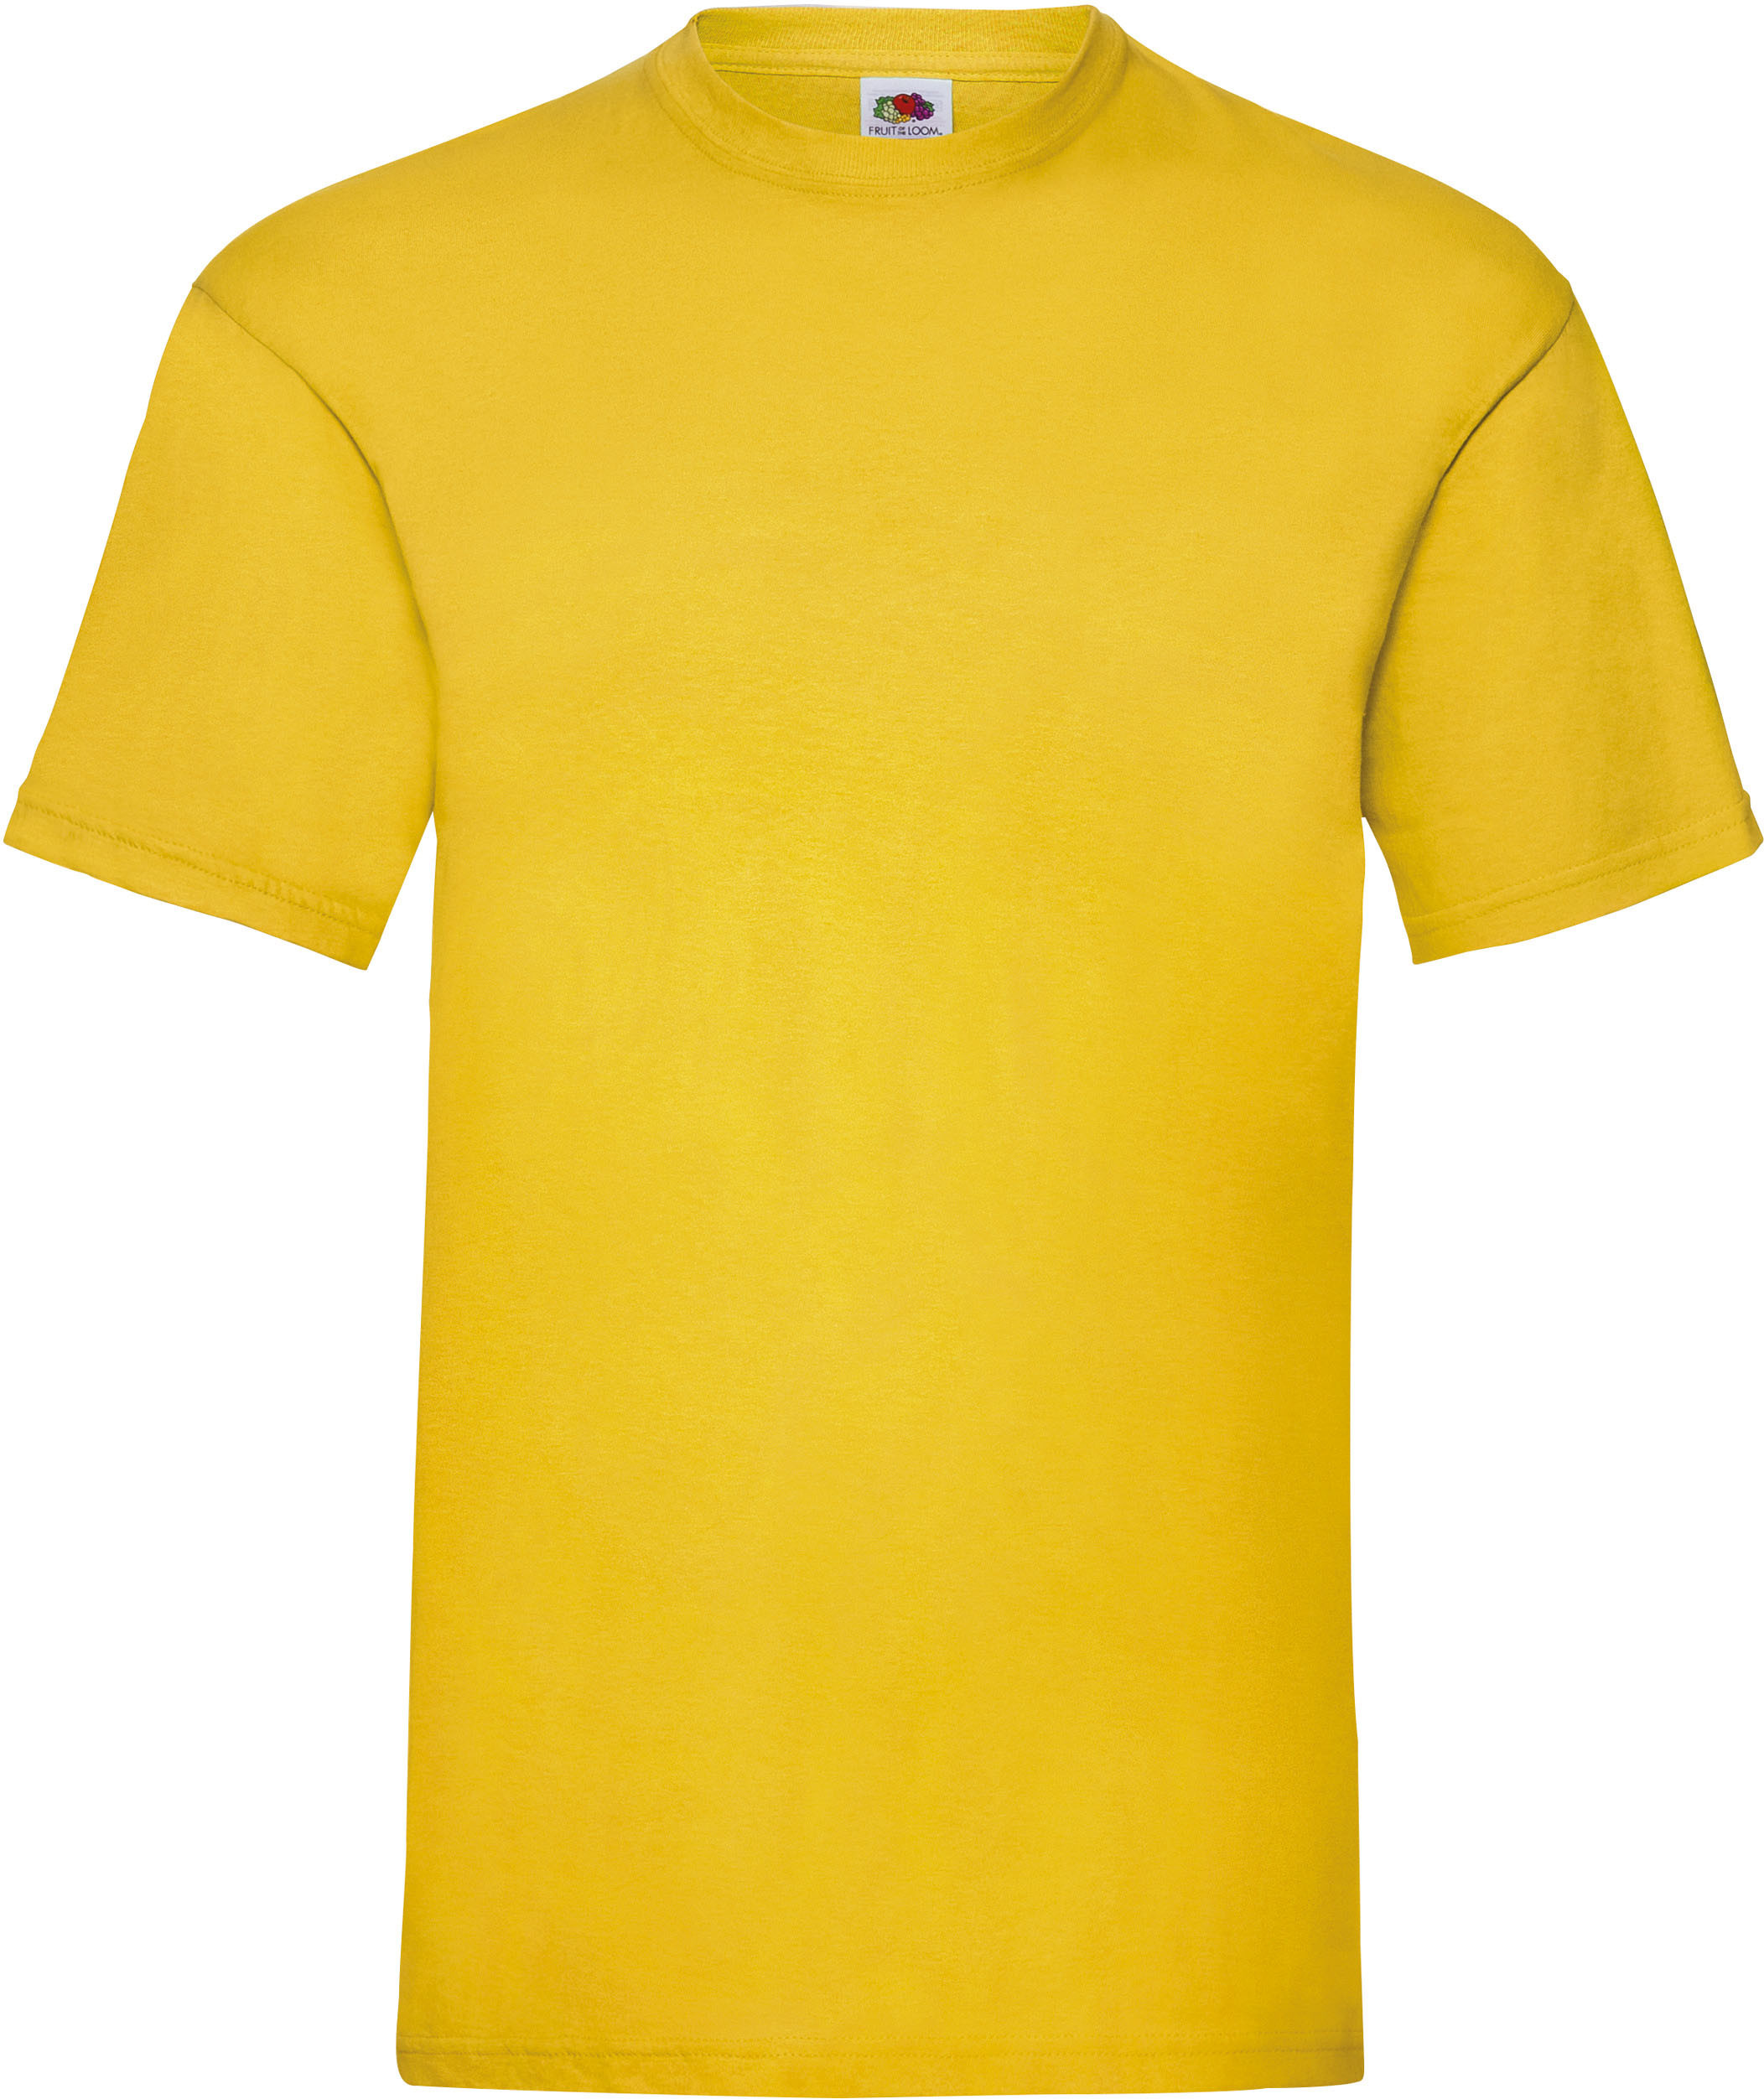 camiseta_personalizada_sc221_amarillo_sunflower